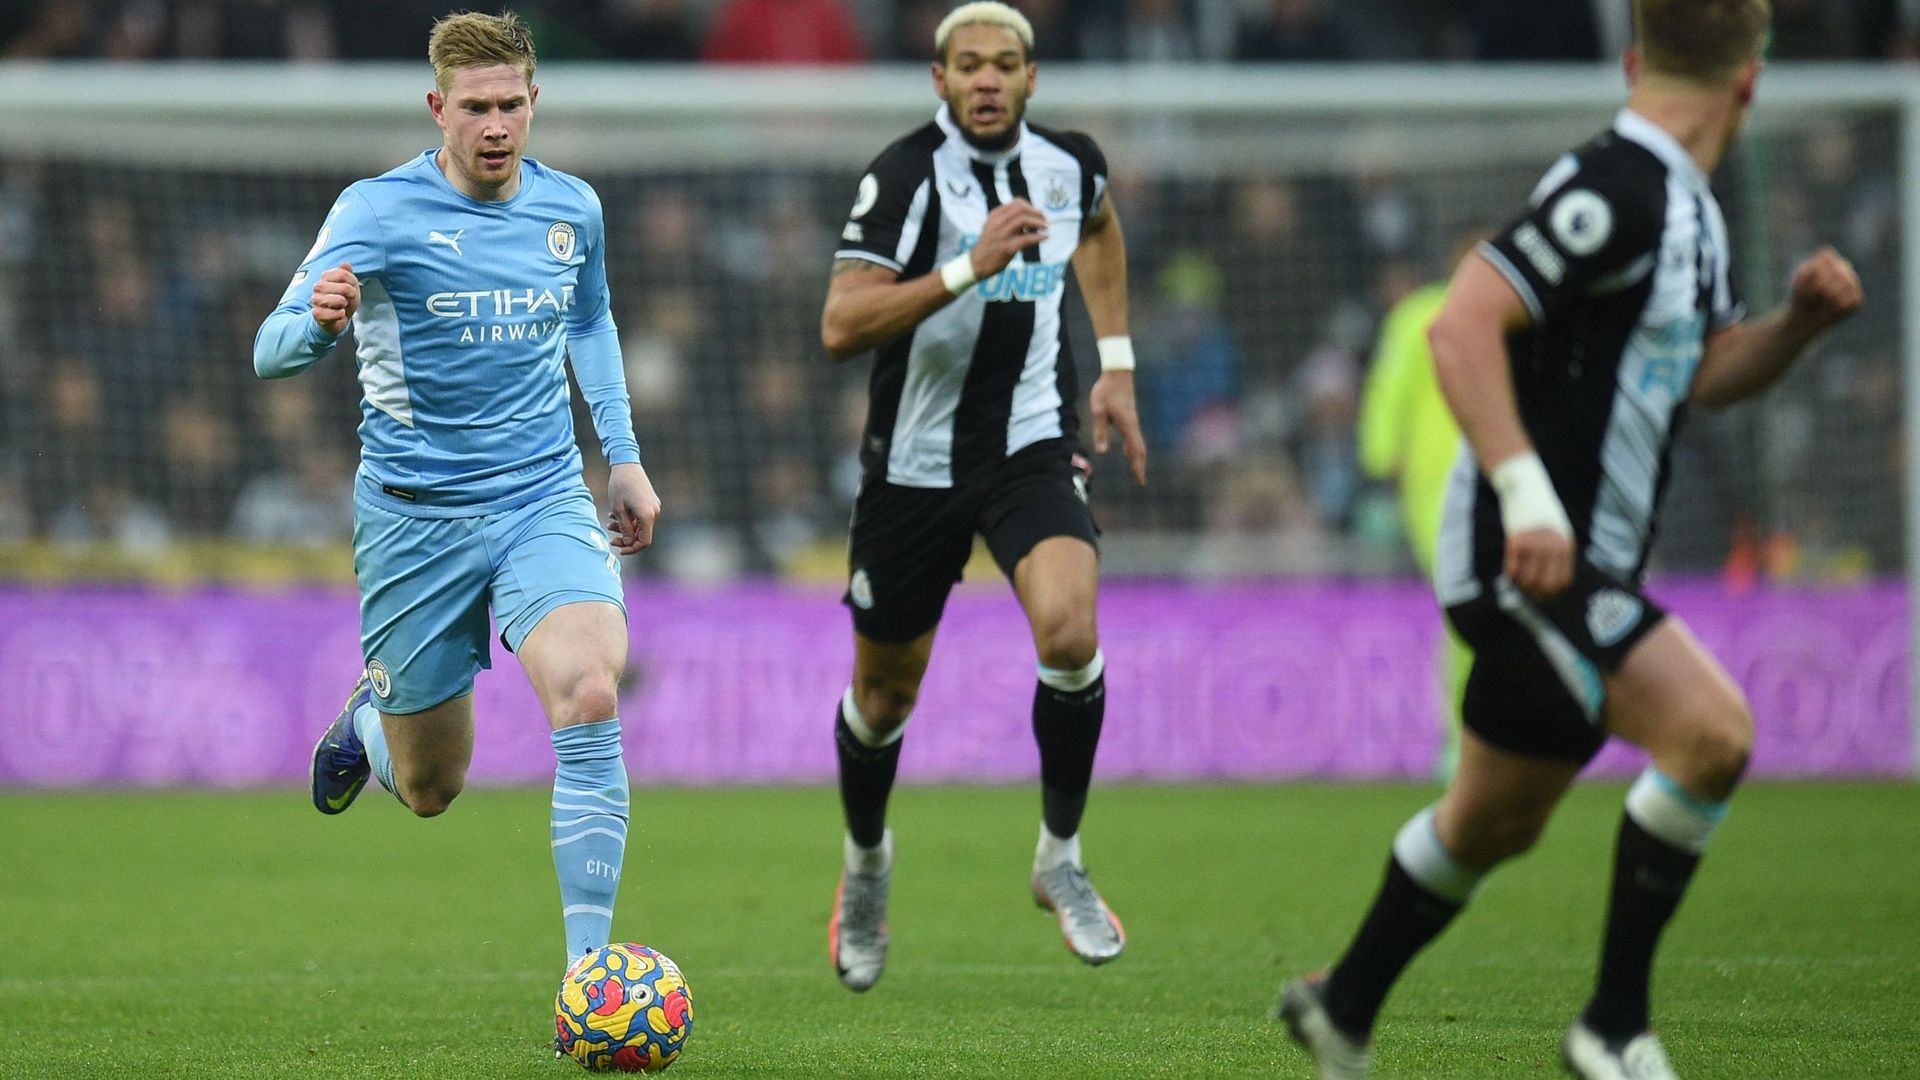 Manchester City et Kevin De Bruyne sont sortis vainqueurs 0-4 de leur duel face à Newcastle dimanche pour le compte de la 18e journée de Premier League.